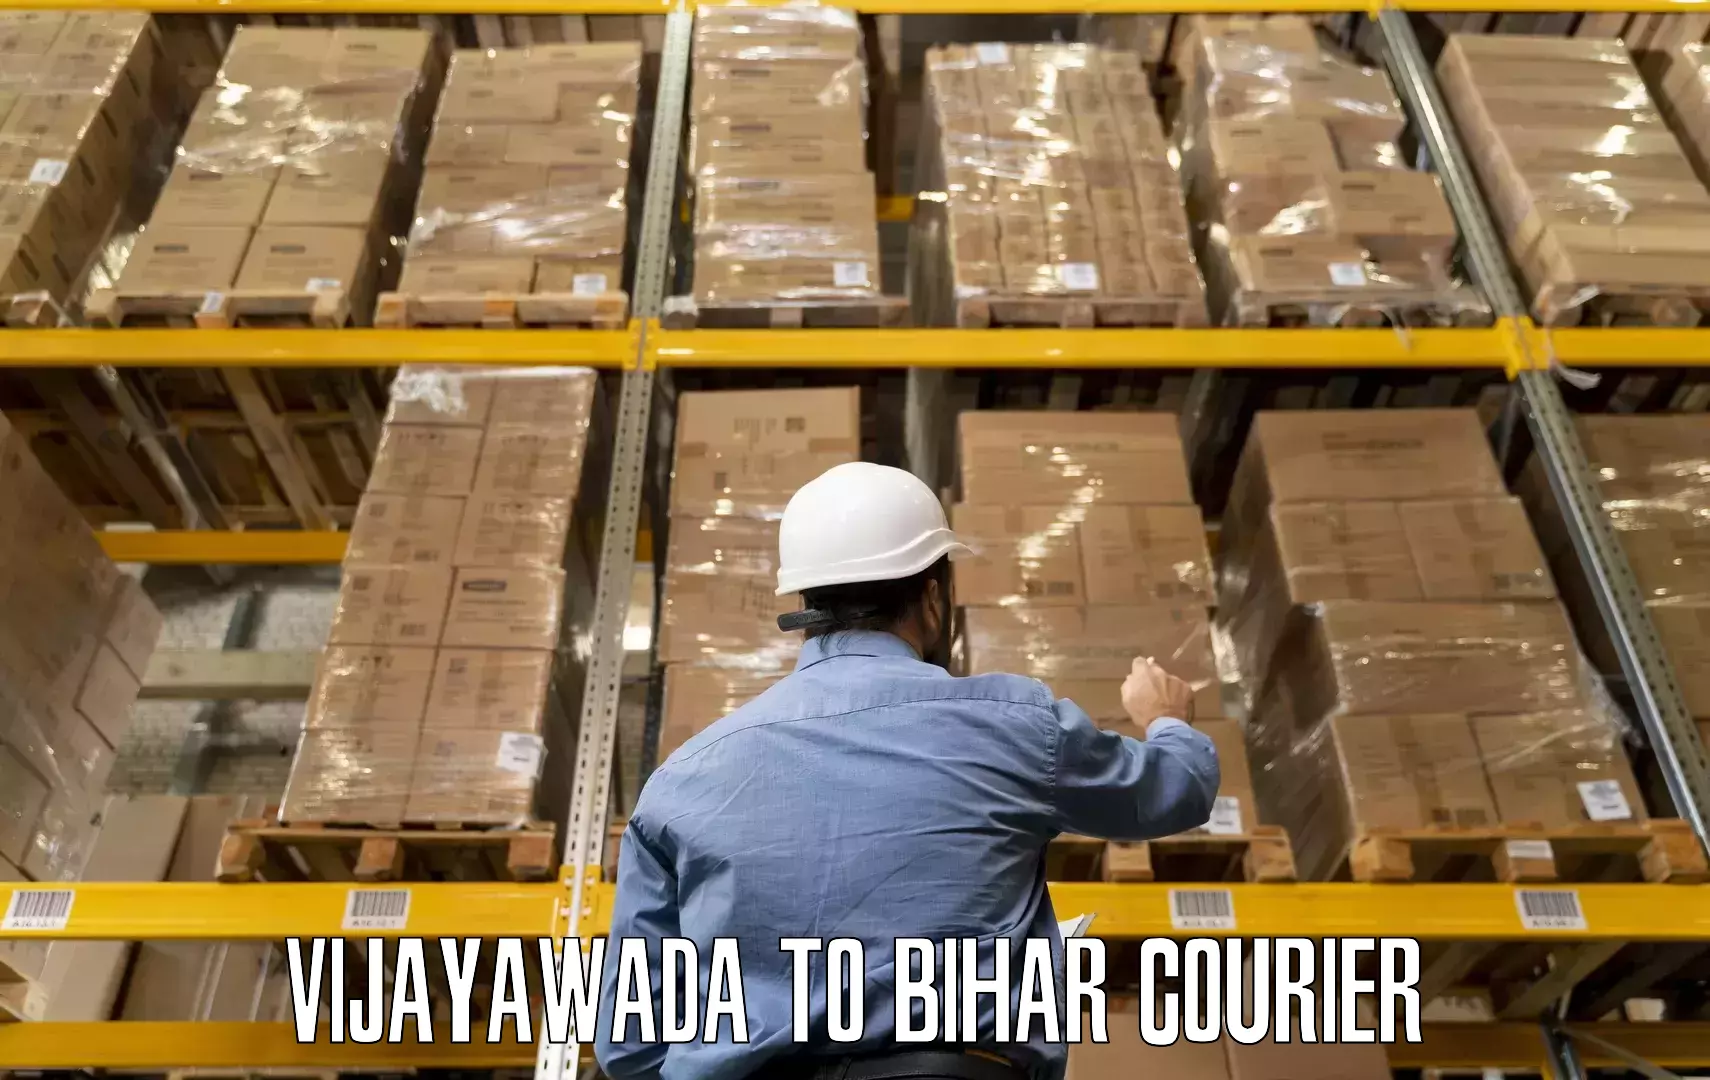 Furniture transport professionals Vijayawada to Biraul